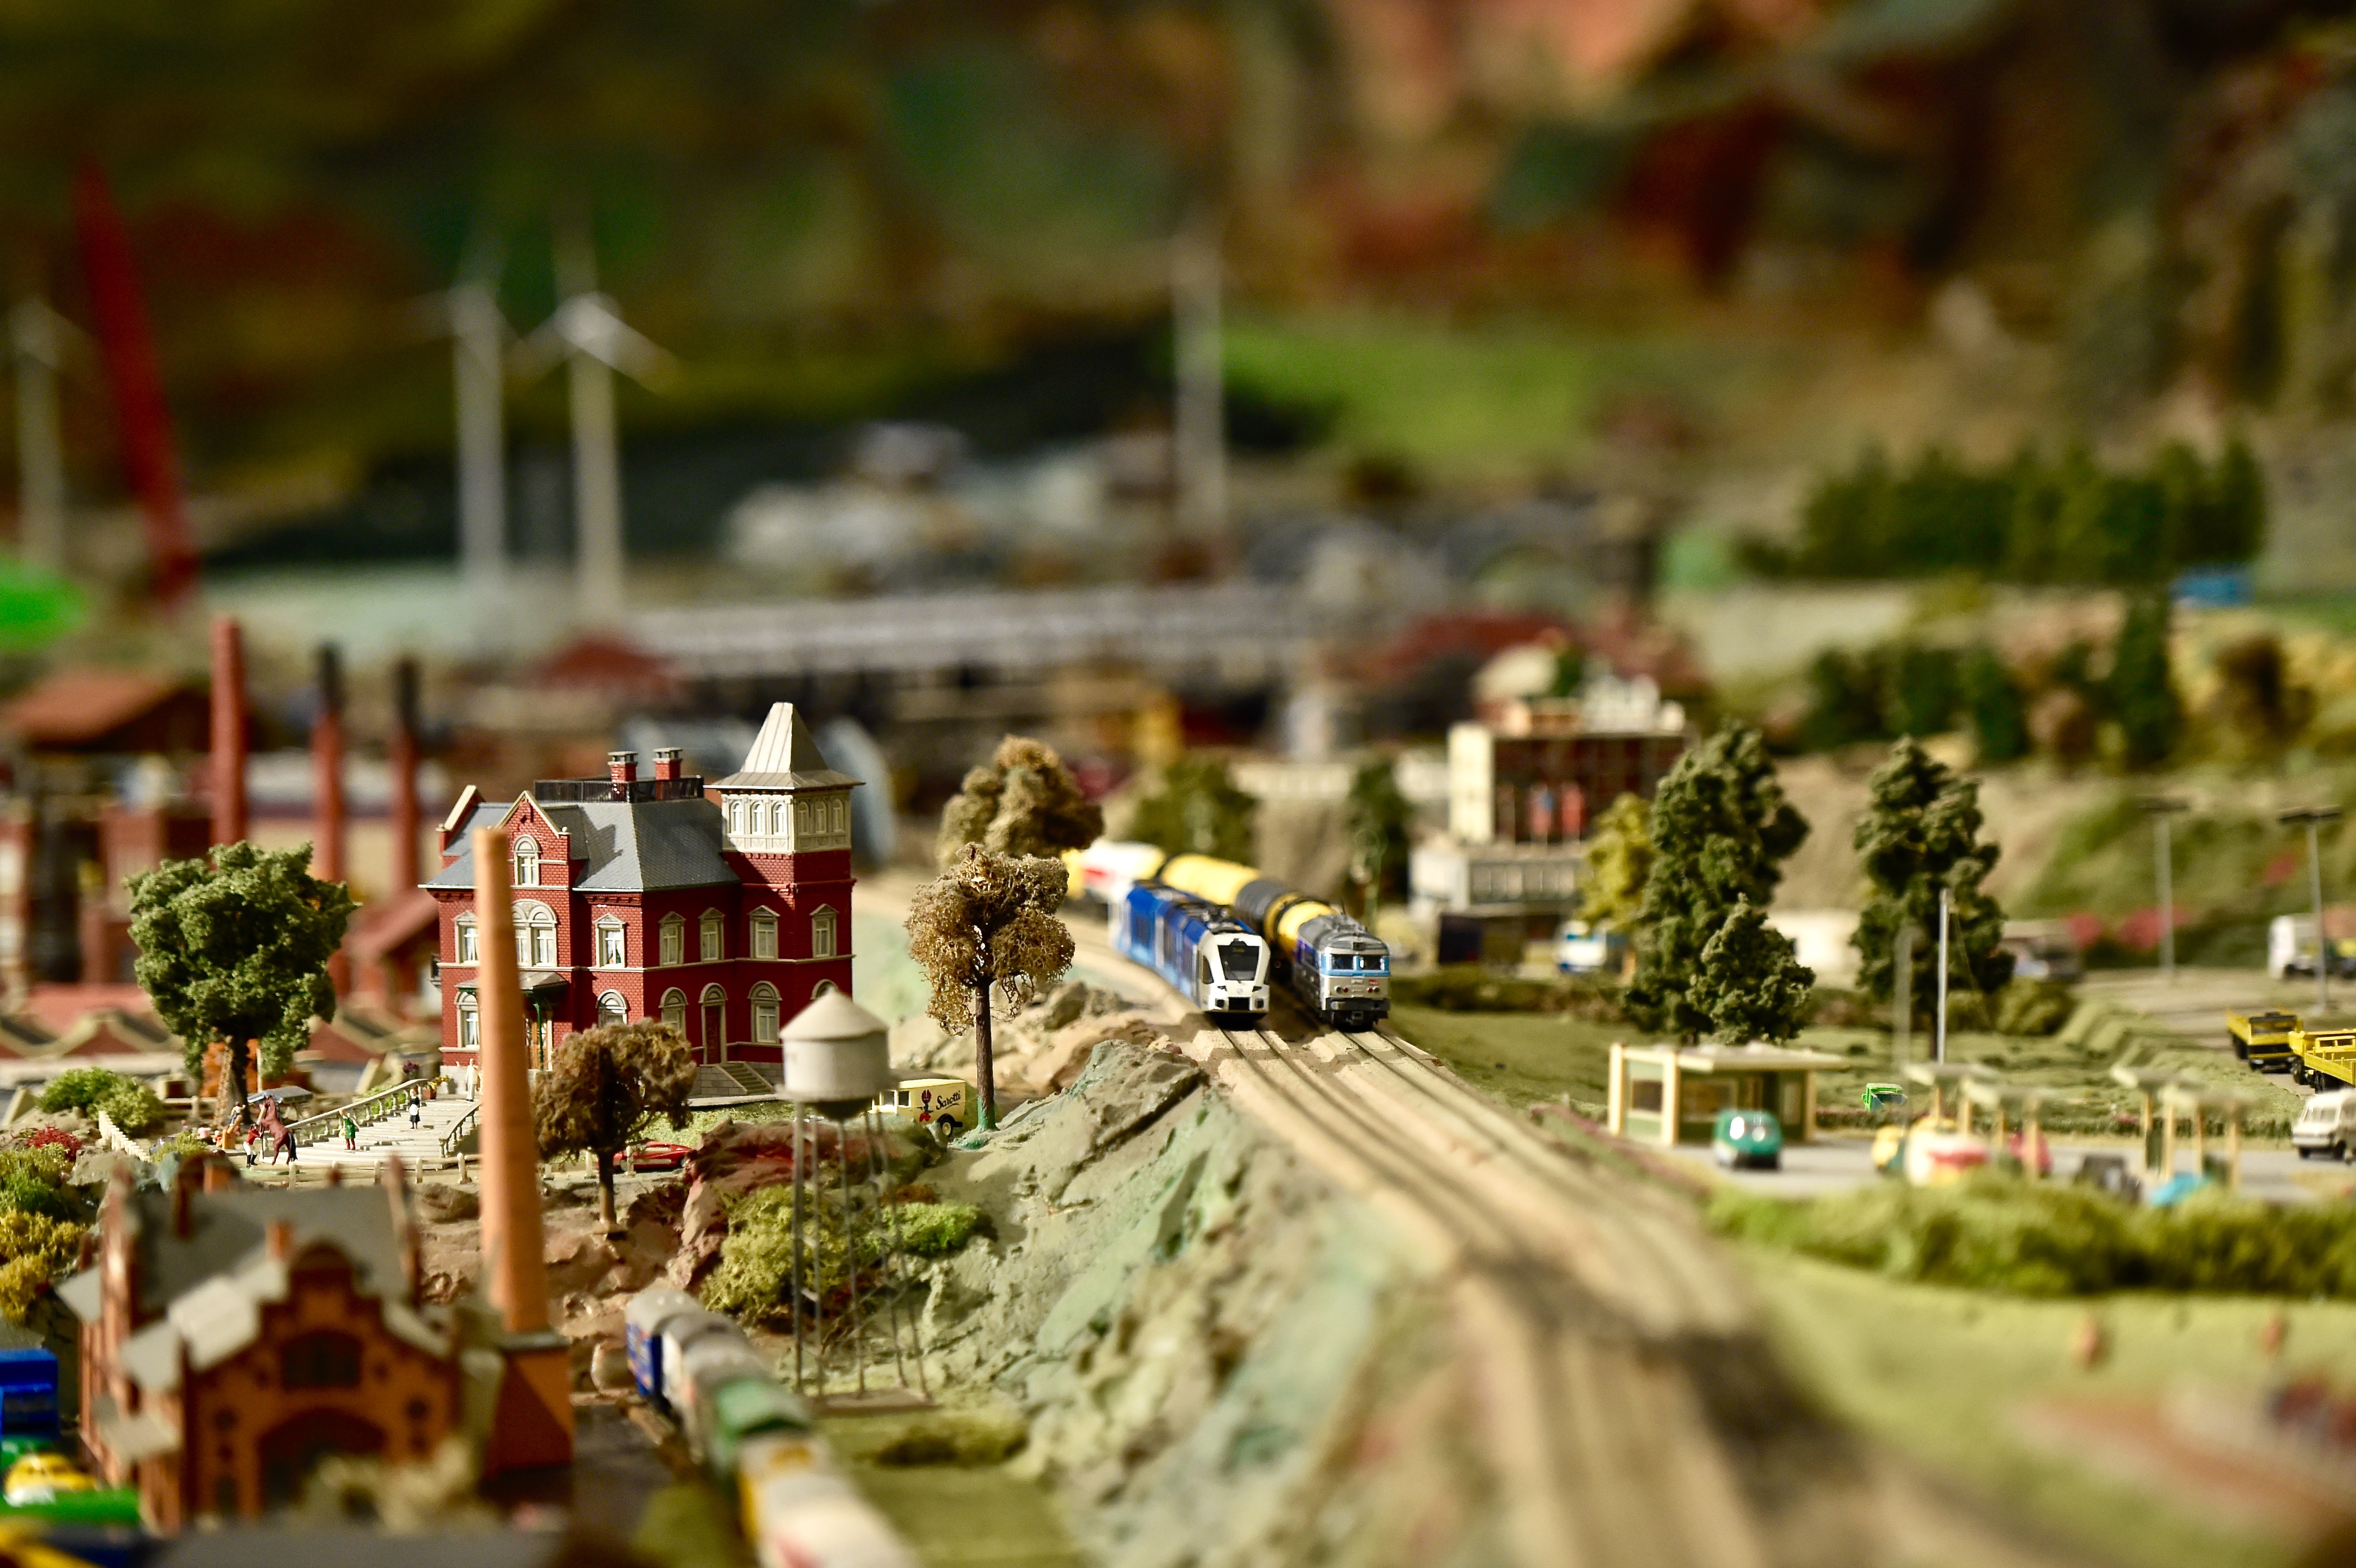 Le monde Miniature à Clécy en Suisse Normande - Calvados. Visite